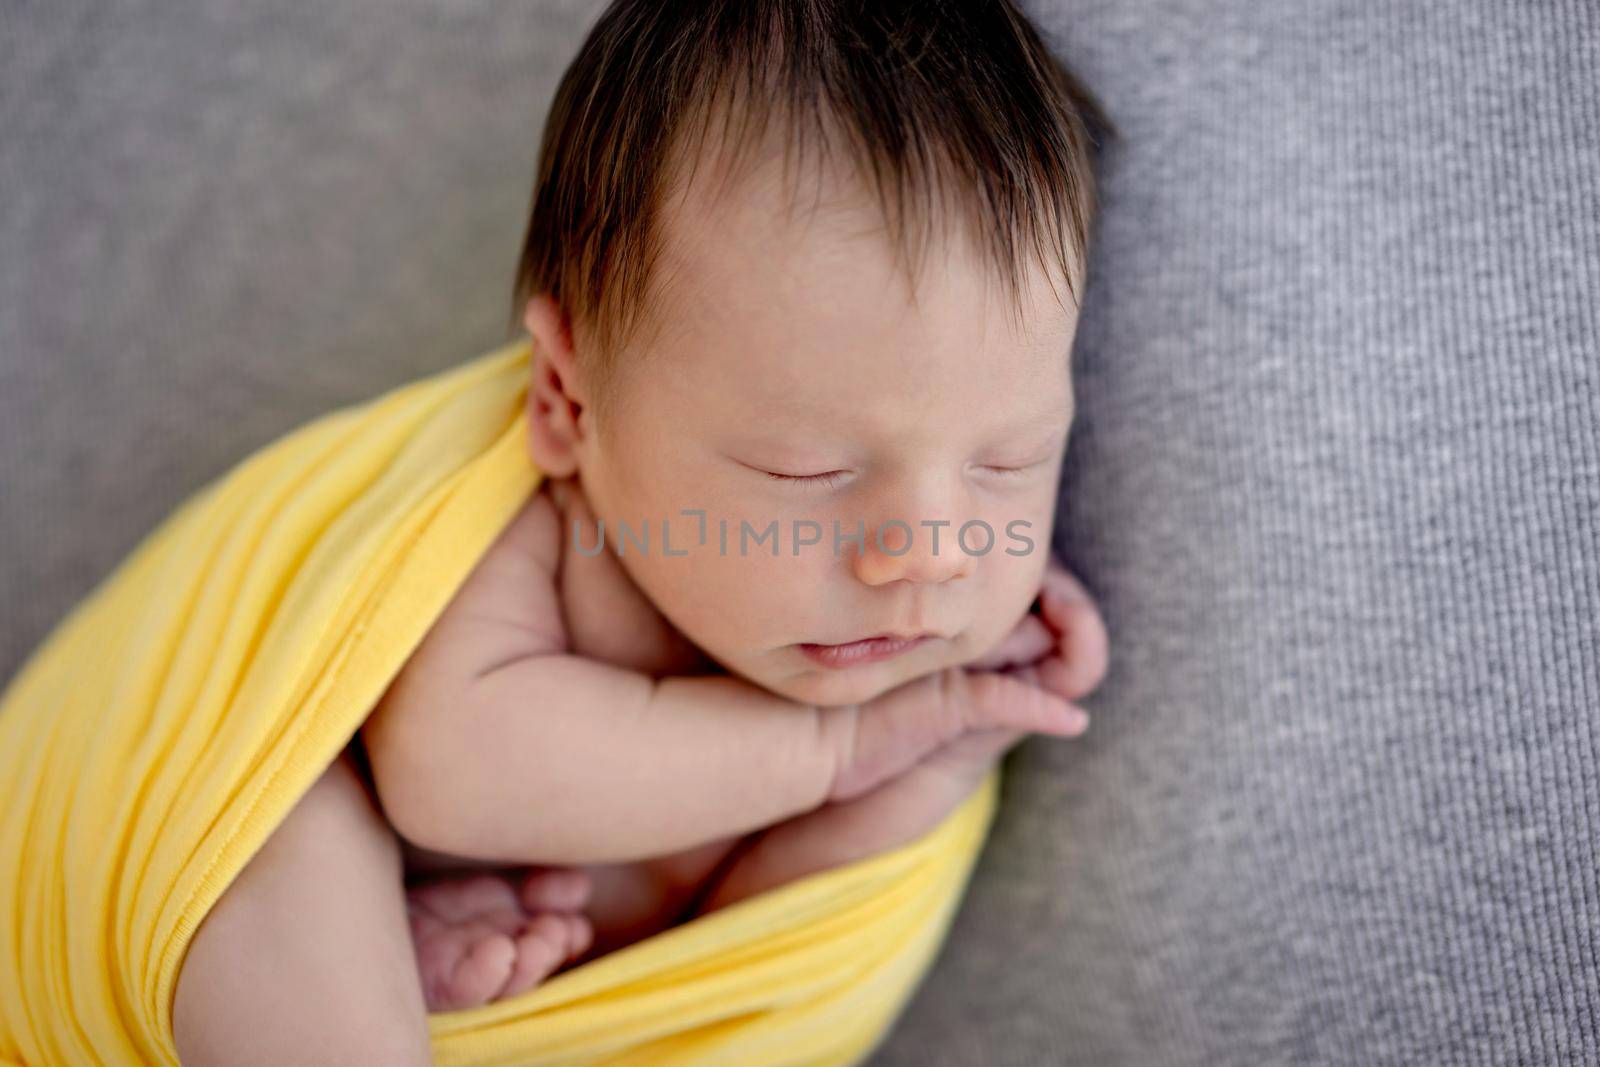 Lovely newborn in yellow blanket by tan4ikk1